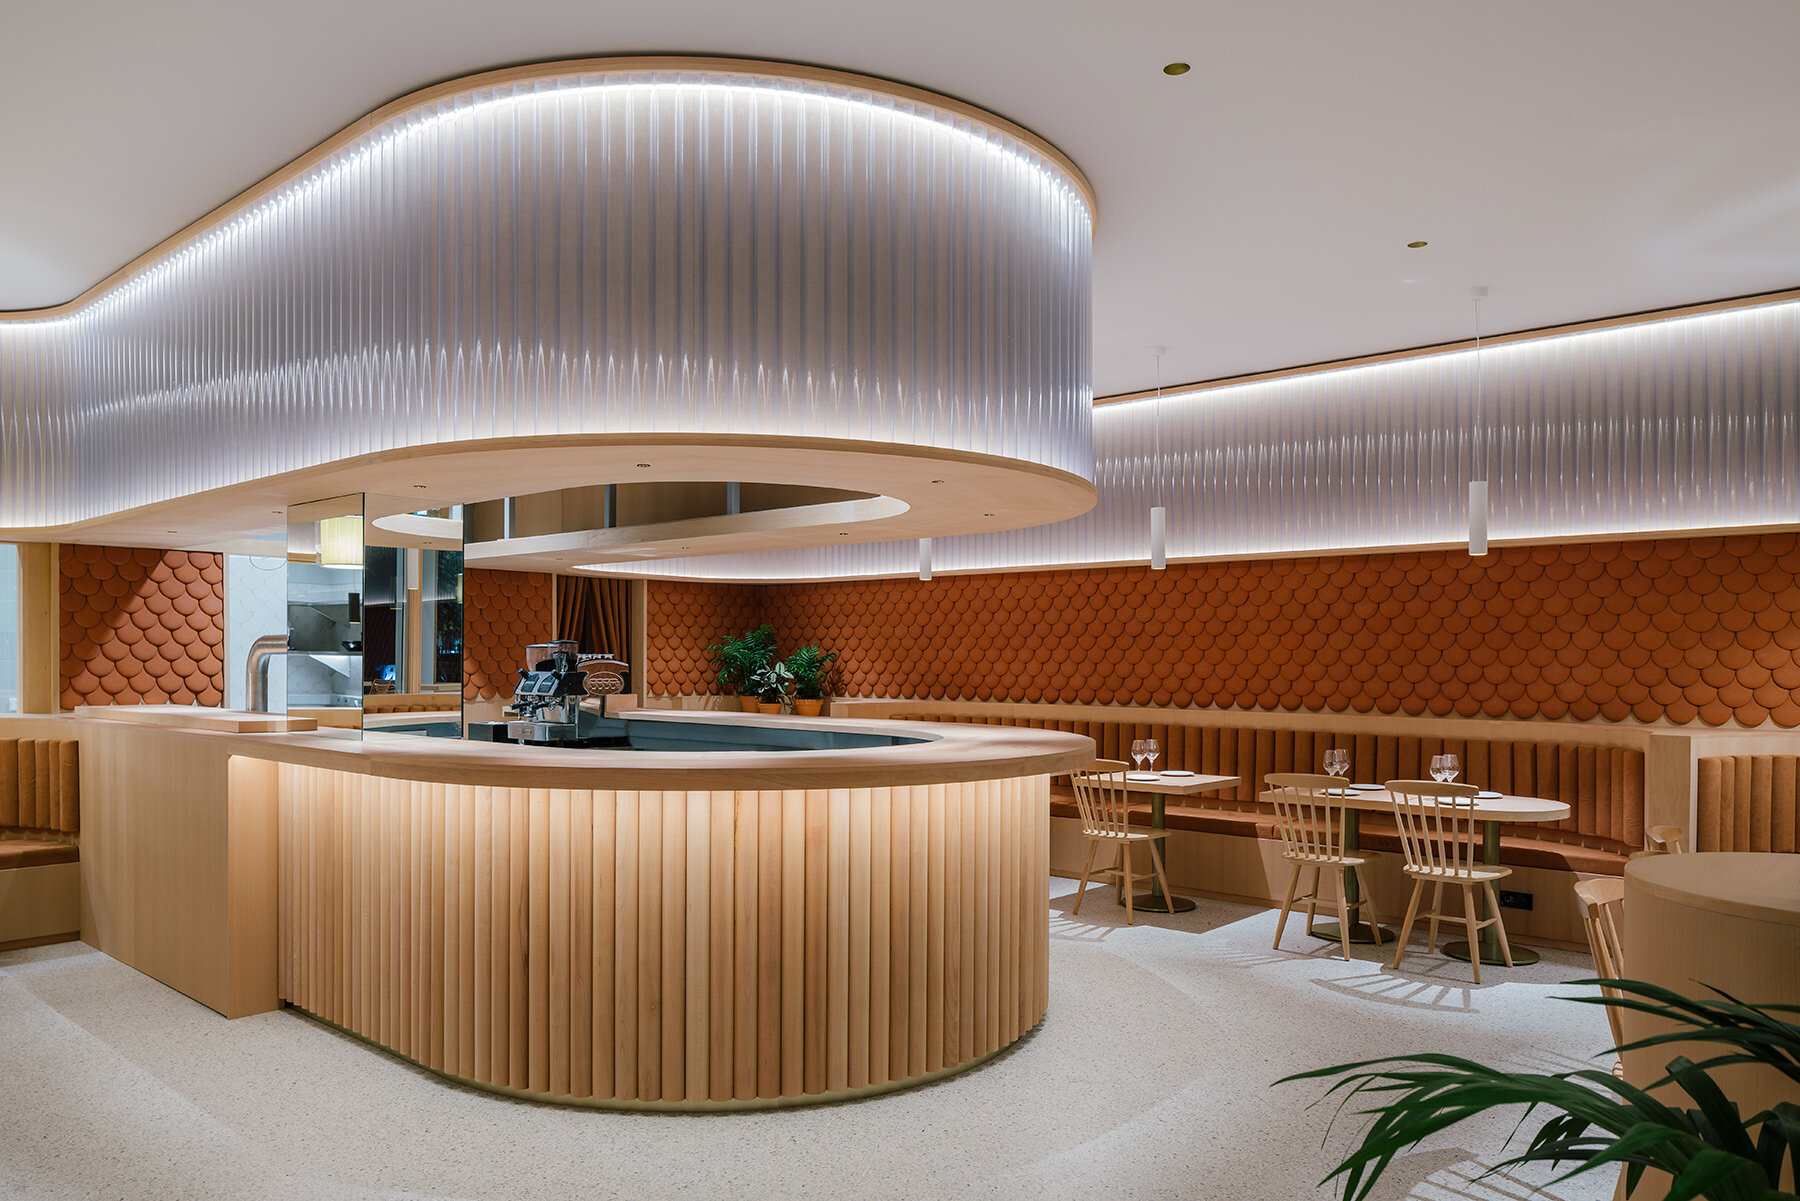 Eco-Jin Restaurant Concept Room: diseño sostenible y modernidad en un  espacio reducido